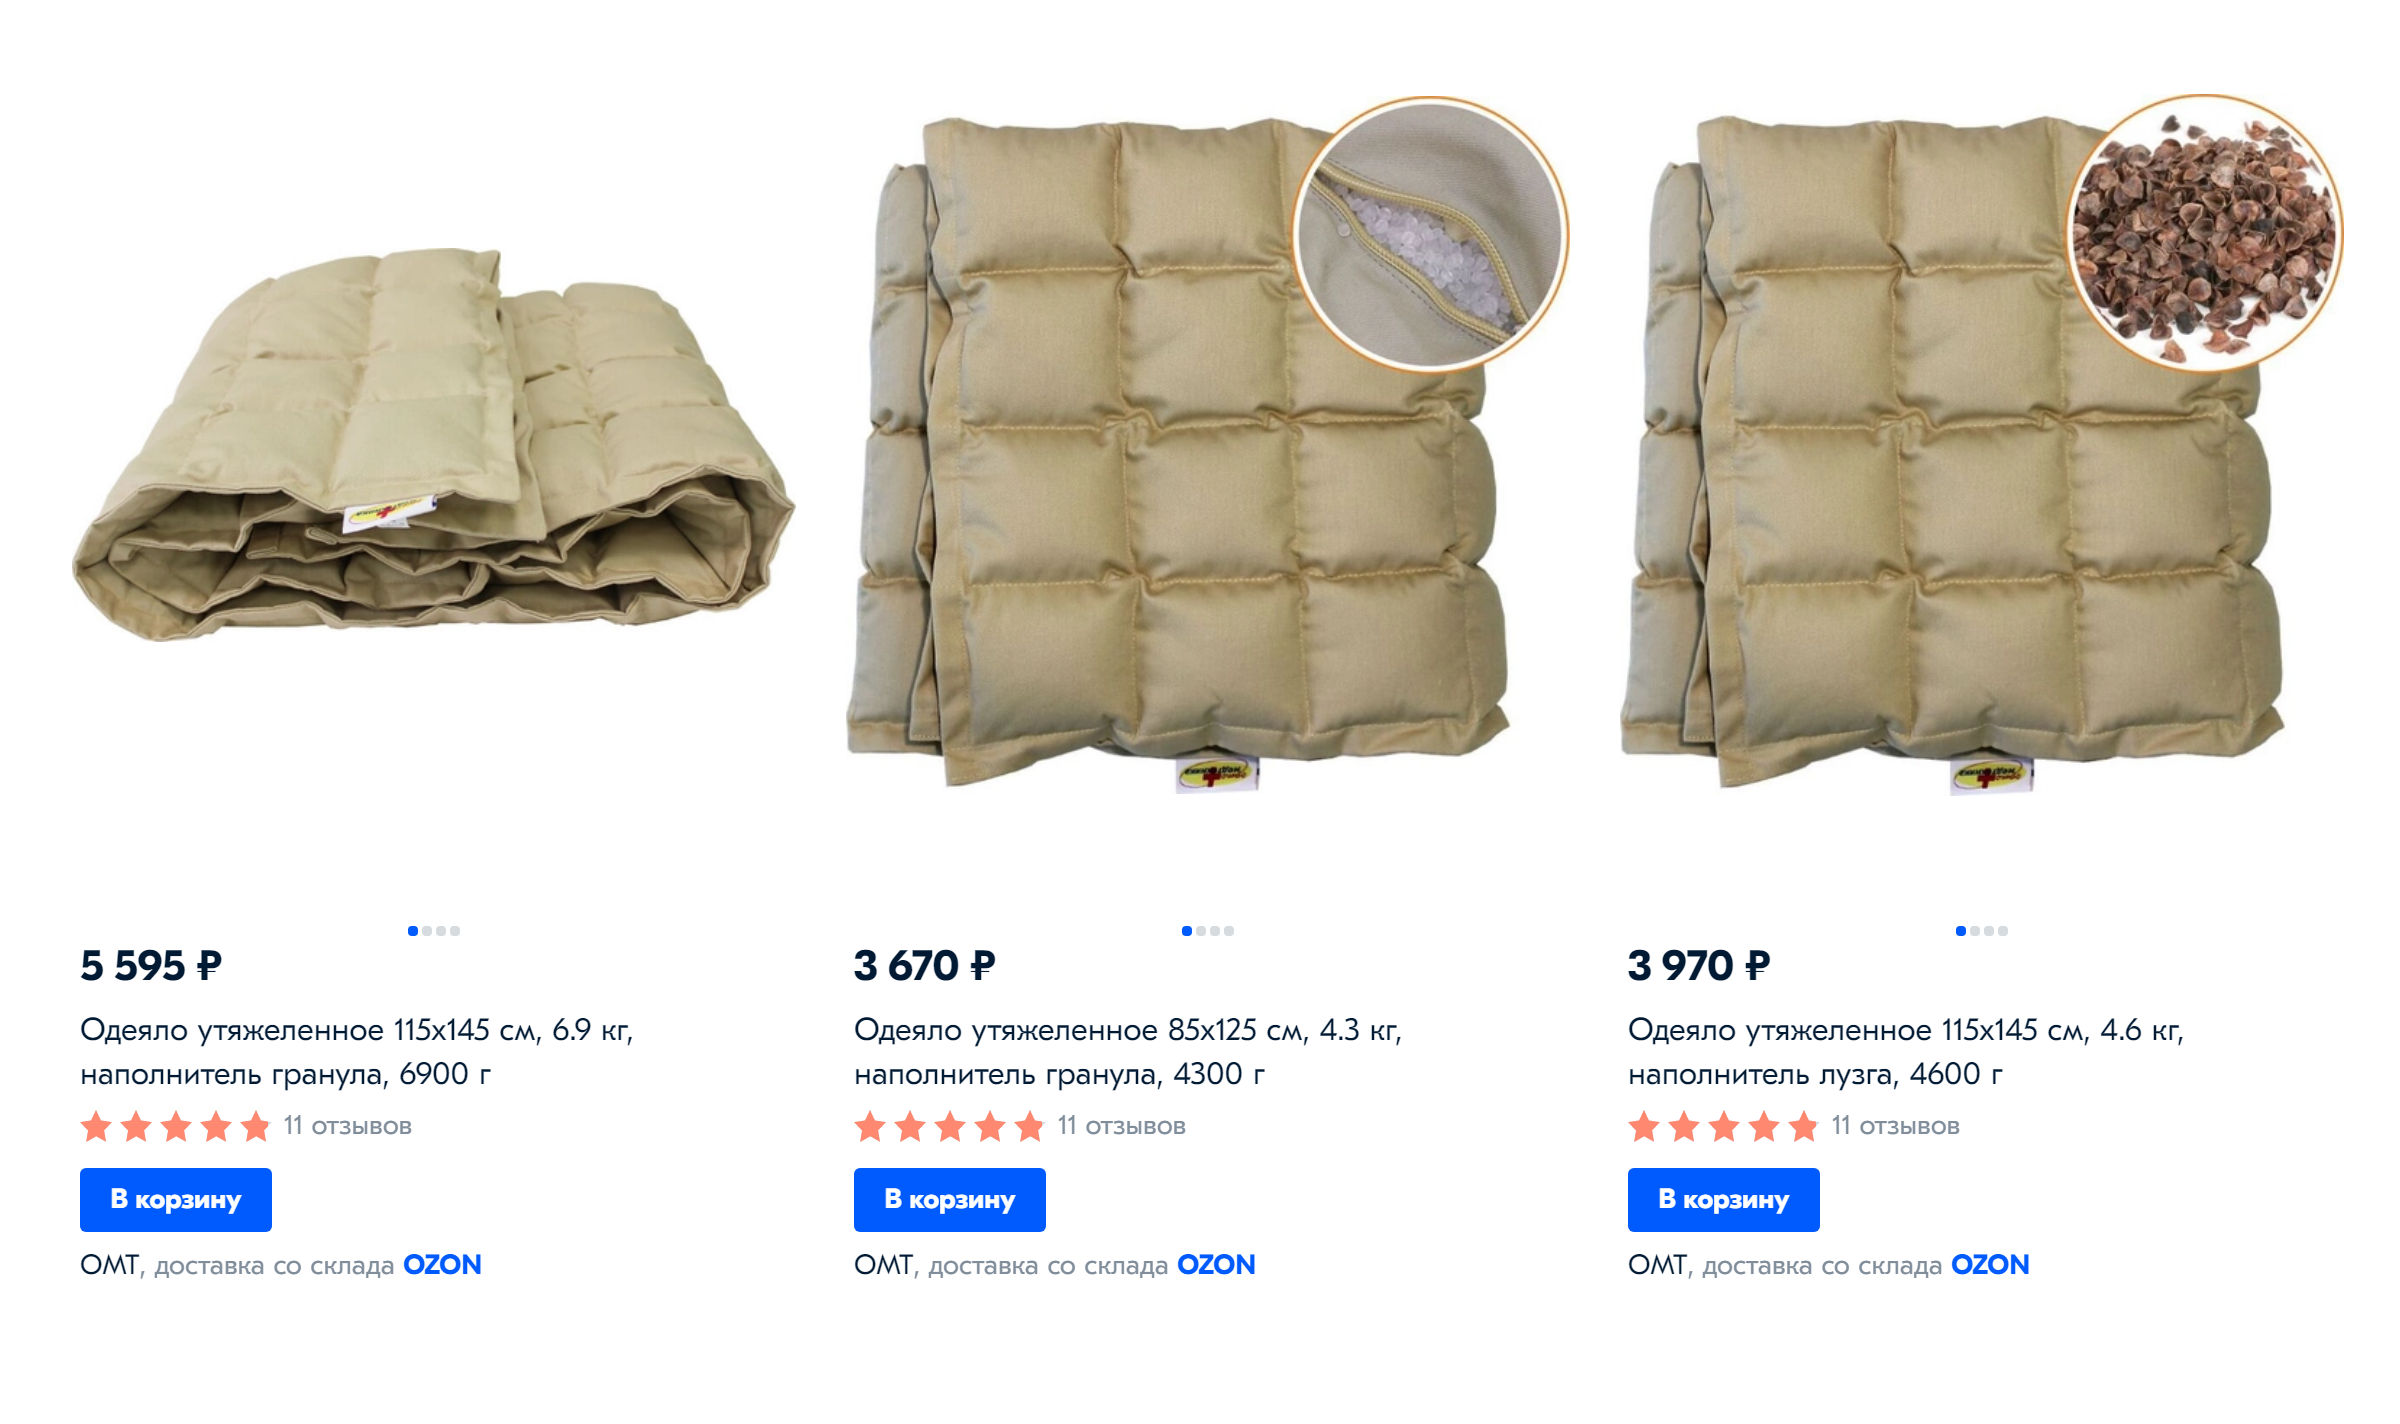 Цены на утяжеленные одеяла на «Озоне» — от 3670 <span class=ruble>Р</span> и выше. Бывают искусственные и натуральные наполнители